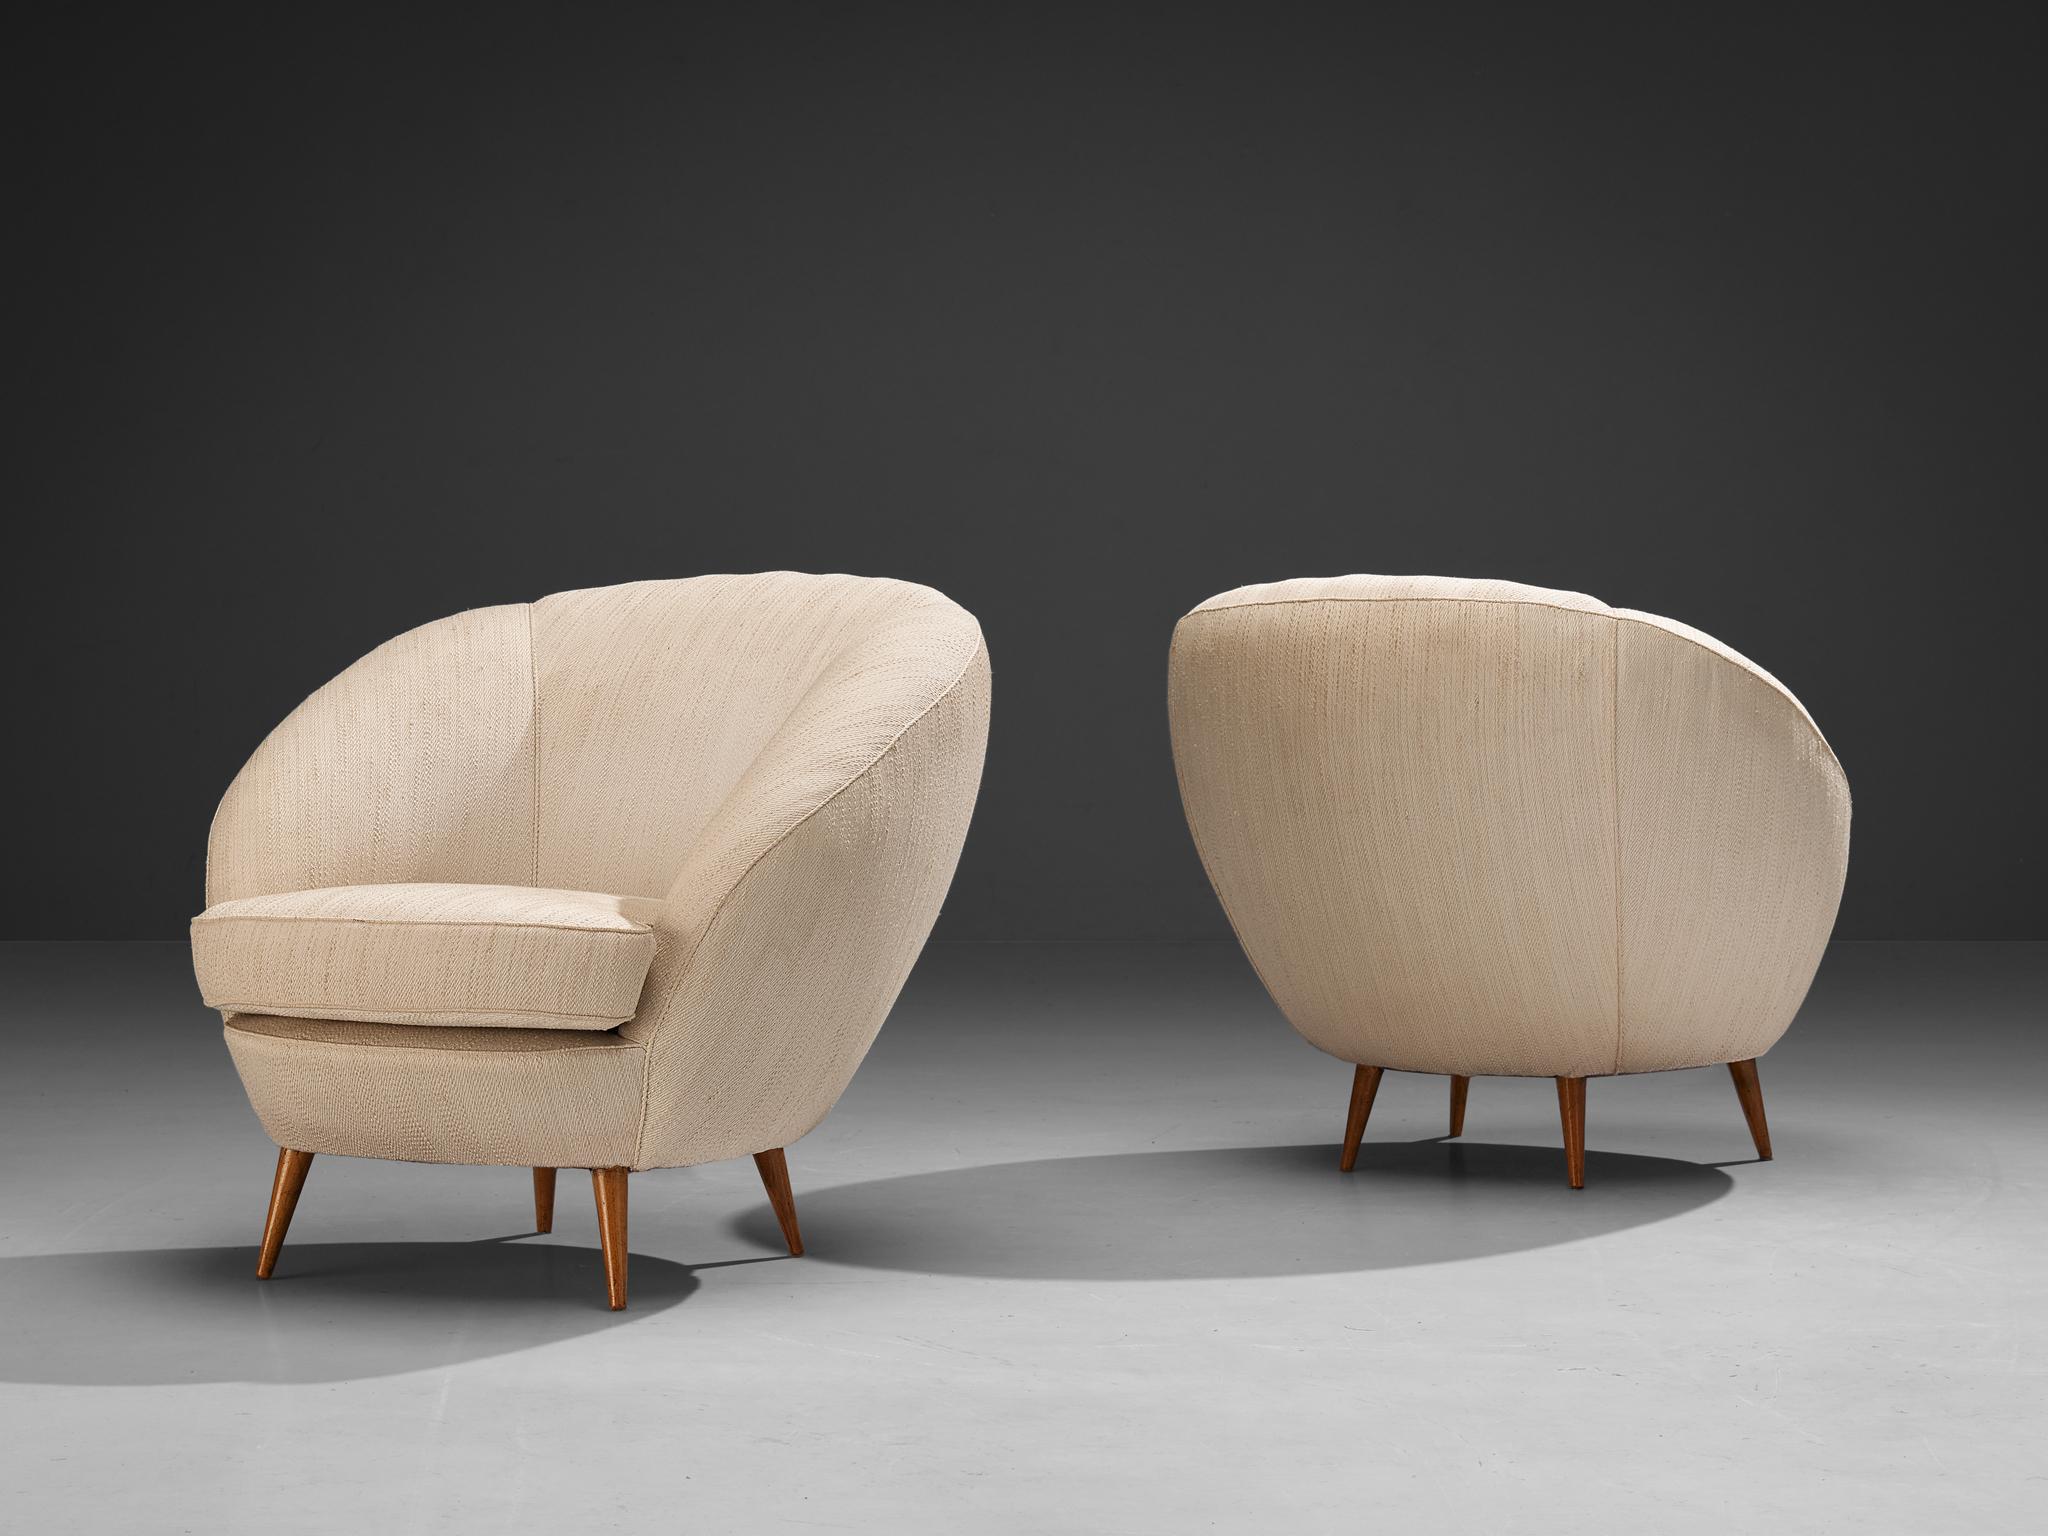 Paar Clubsessel, Stoff, Buche, Italien, 1950er Jahre

Ein klassisches Paar Loungesessel, ein wunderbares Beispiel für italienisches Design aus den 1950er Jahren. Die Stühle sind kühn und kurvenreich, aber dennoch sehr elegant. Die Sitzmöbel zeichnen